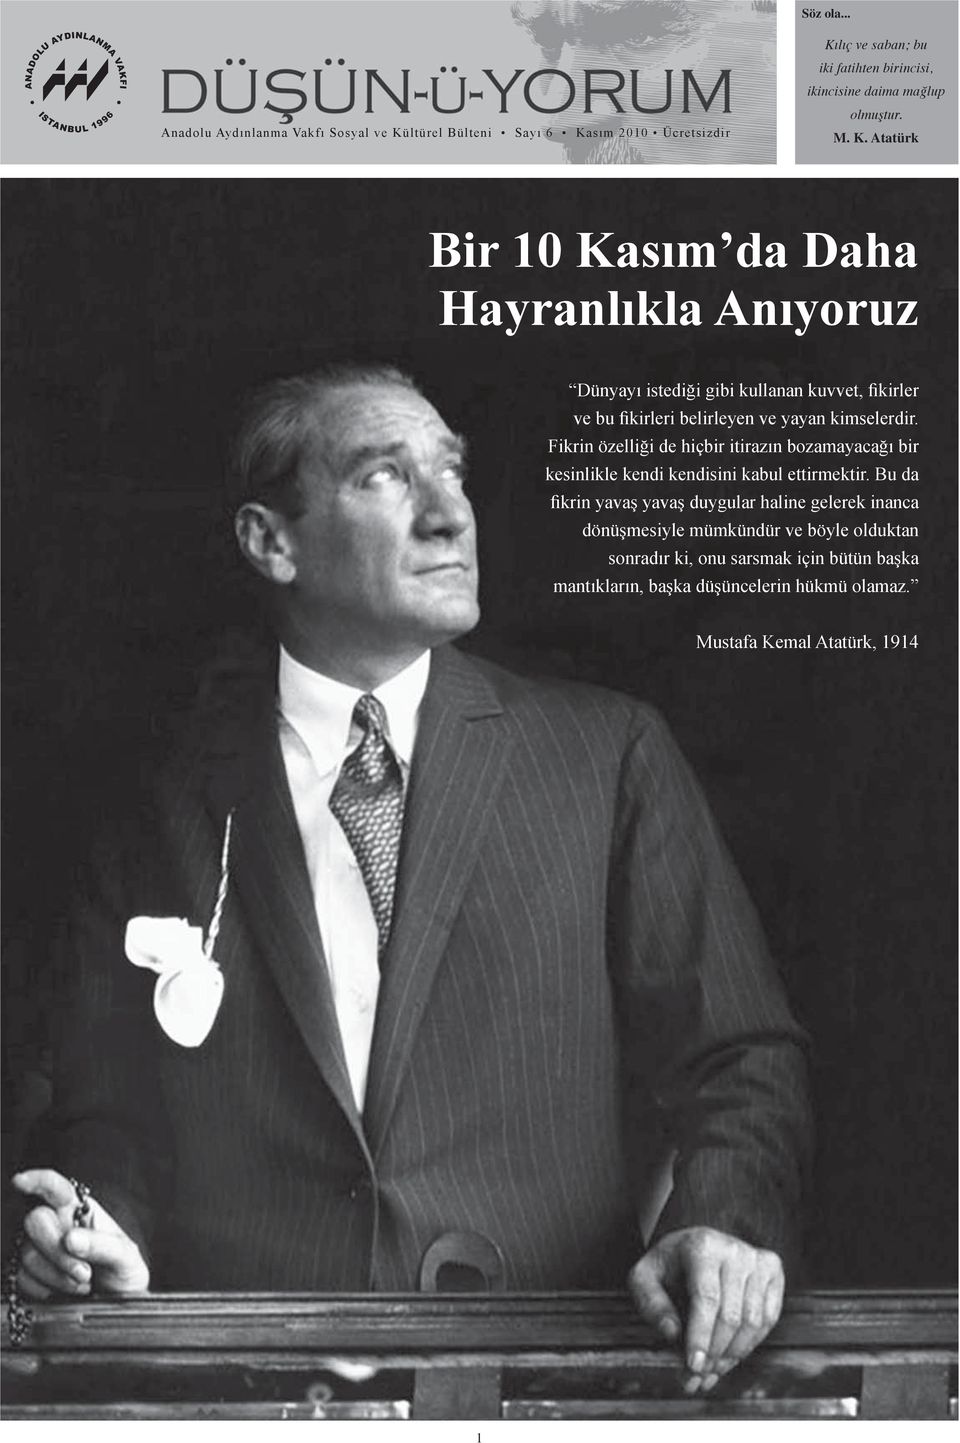 M. K. Atatürk Bir 10 Kasım da Daha Hayranlıkla Anıyoruz Dünyayı istediği gibi kullanan kuvvet, fikirler ve bu fikirleri belirleyen ve yayan kimselerdir.